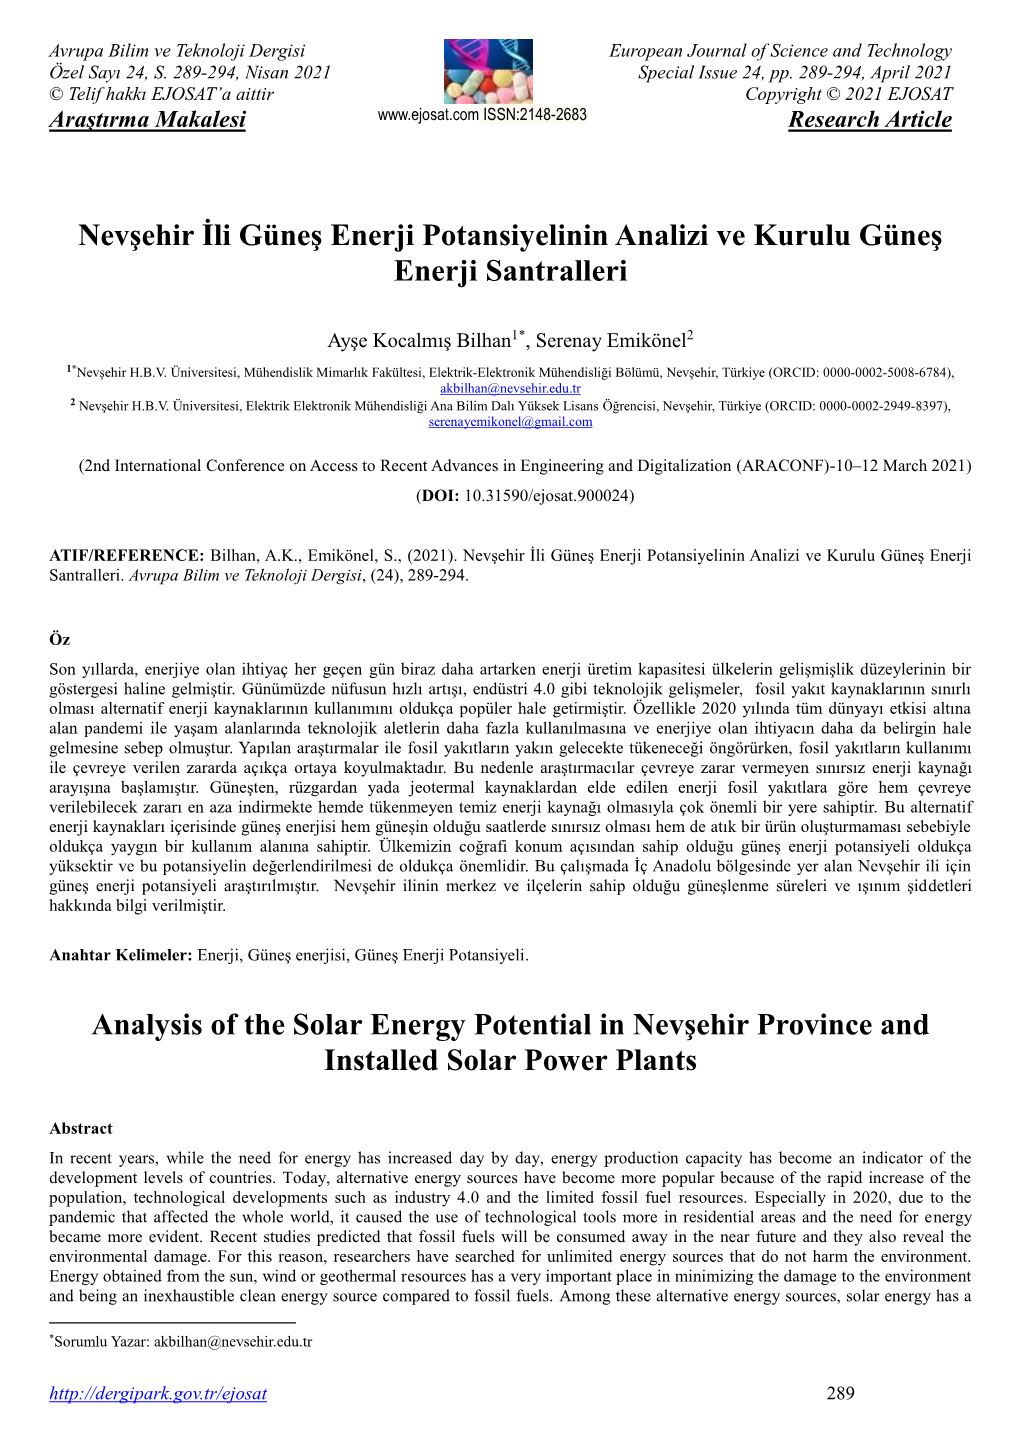 Nevşehir İli Güneş Enerji Potansiyelinin Analizi Ve Kurulu Güneş Enerji Santralleri